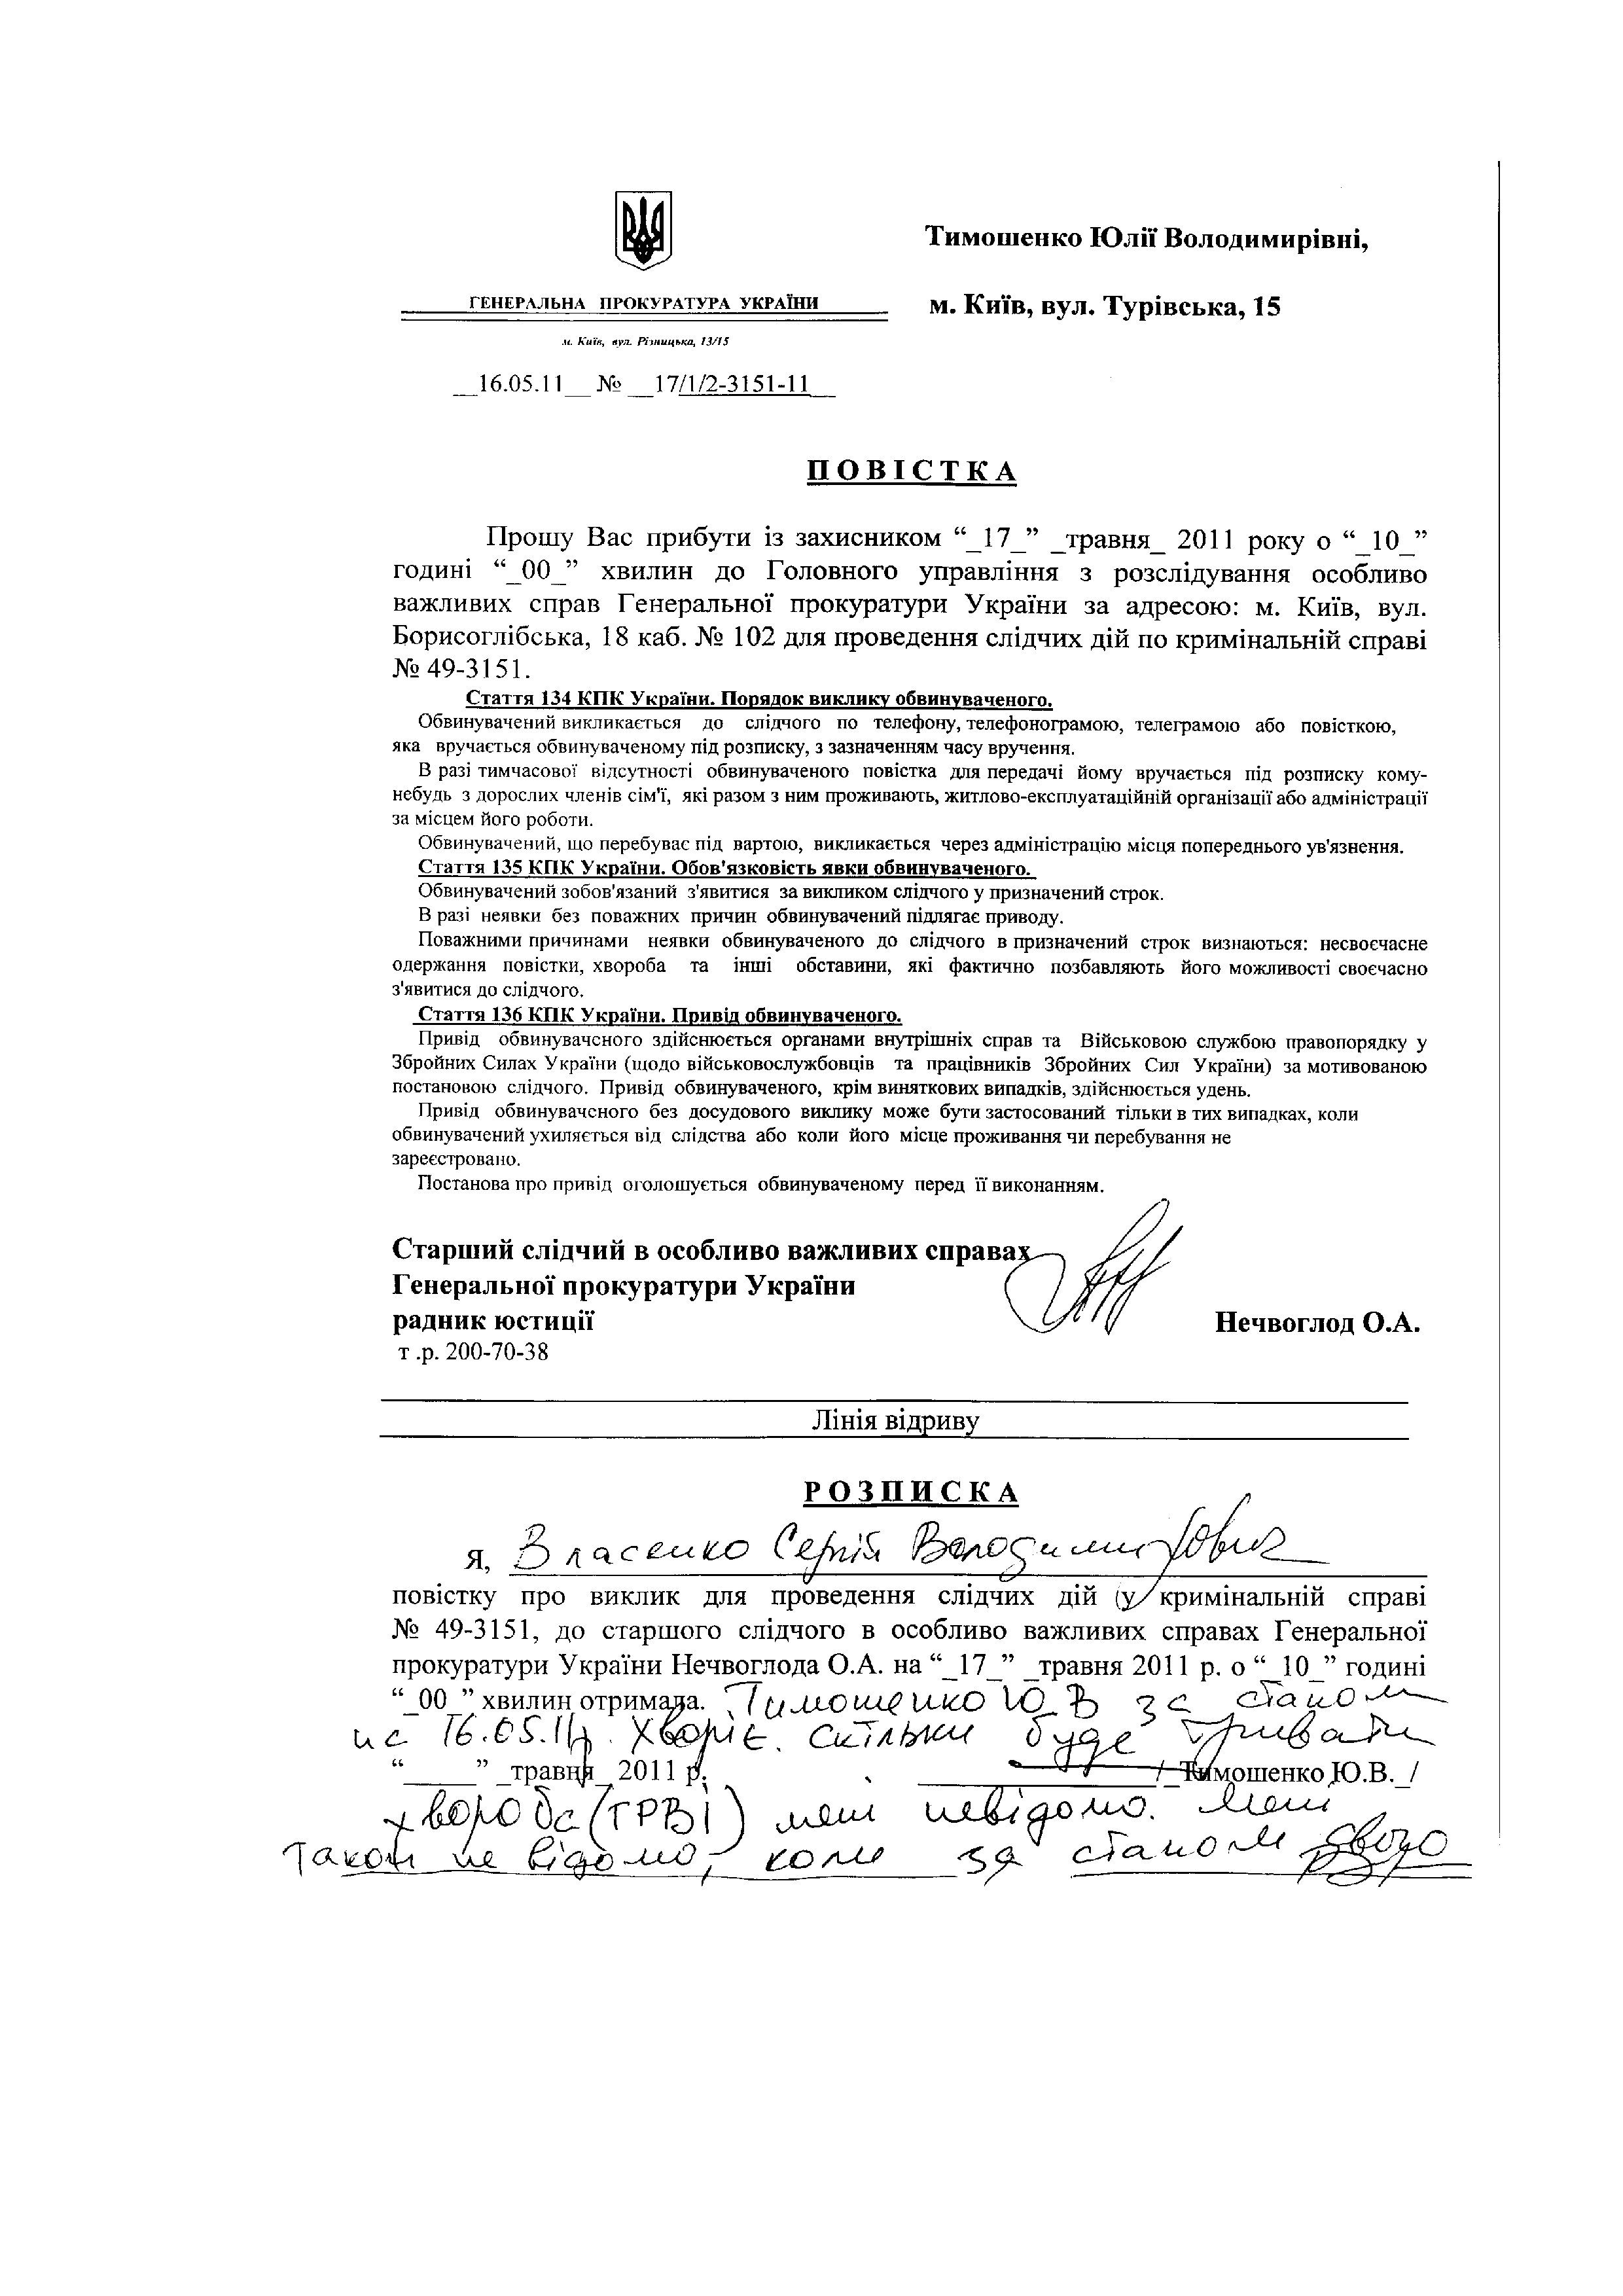 Повістки до ГПУ Тимошенко Ю.В._page005.jpg